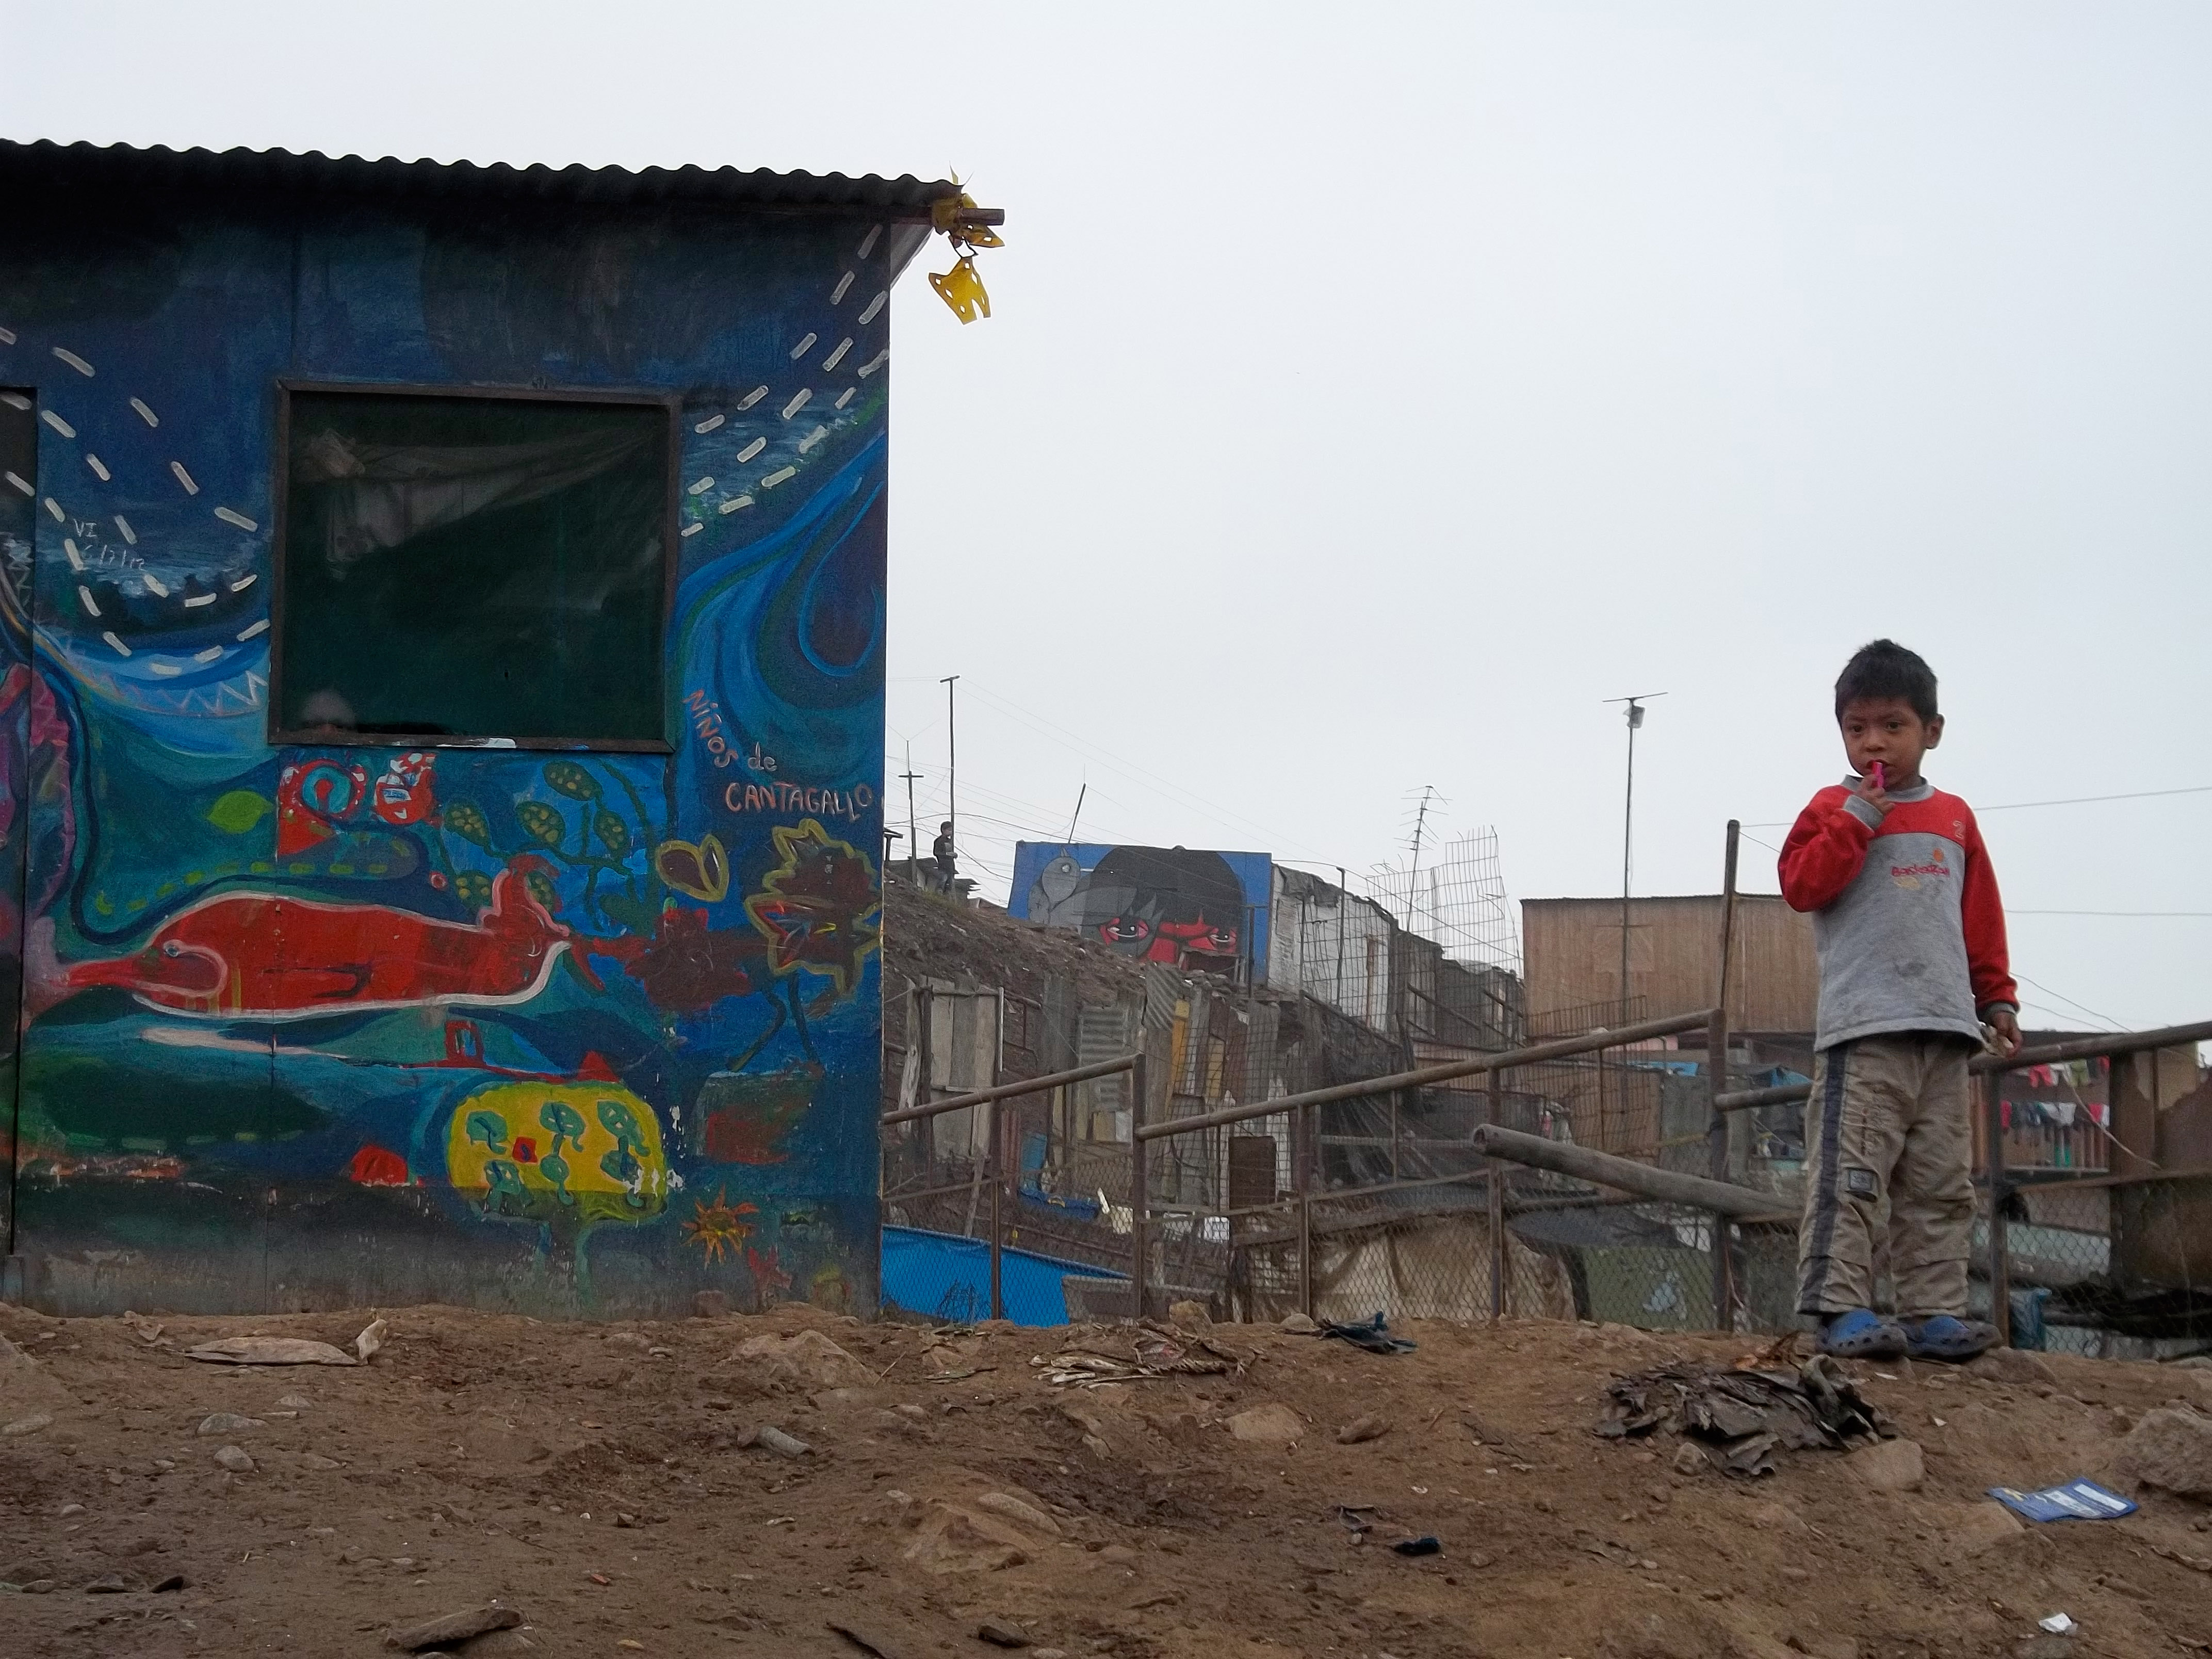 Child in a suburb in Peru